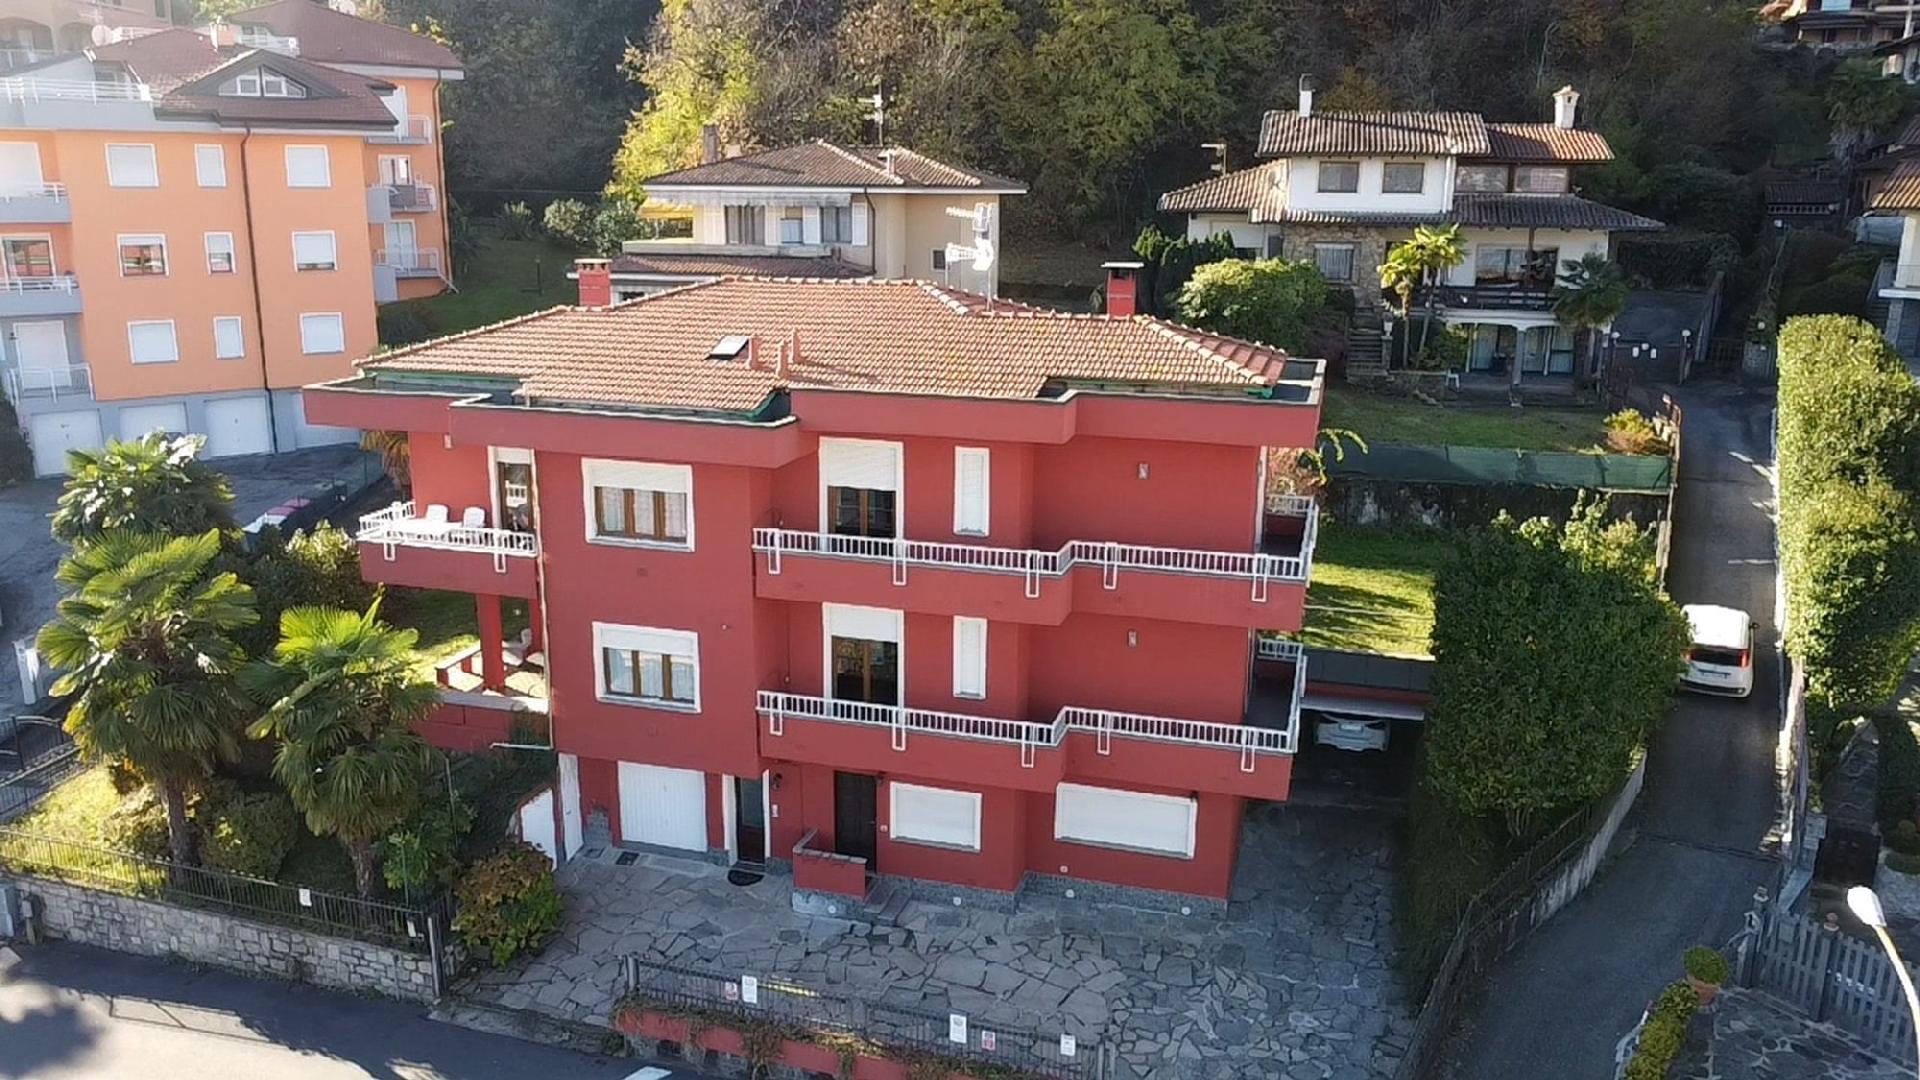 Ferienwohnung für 6 Personen ca. 150 m²  Ferienwohnung in Italien